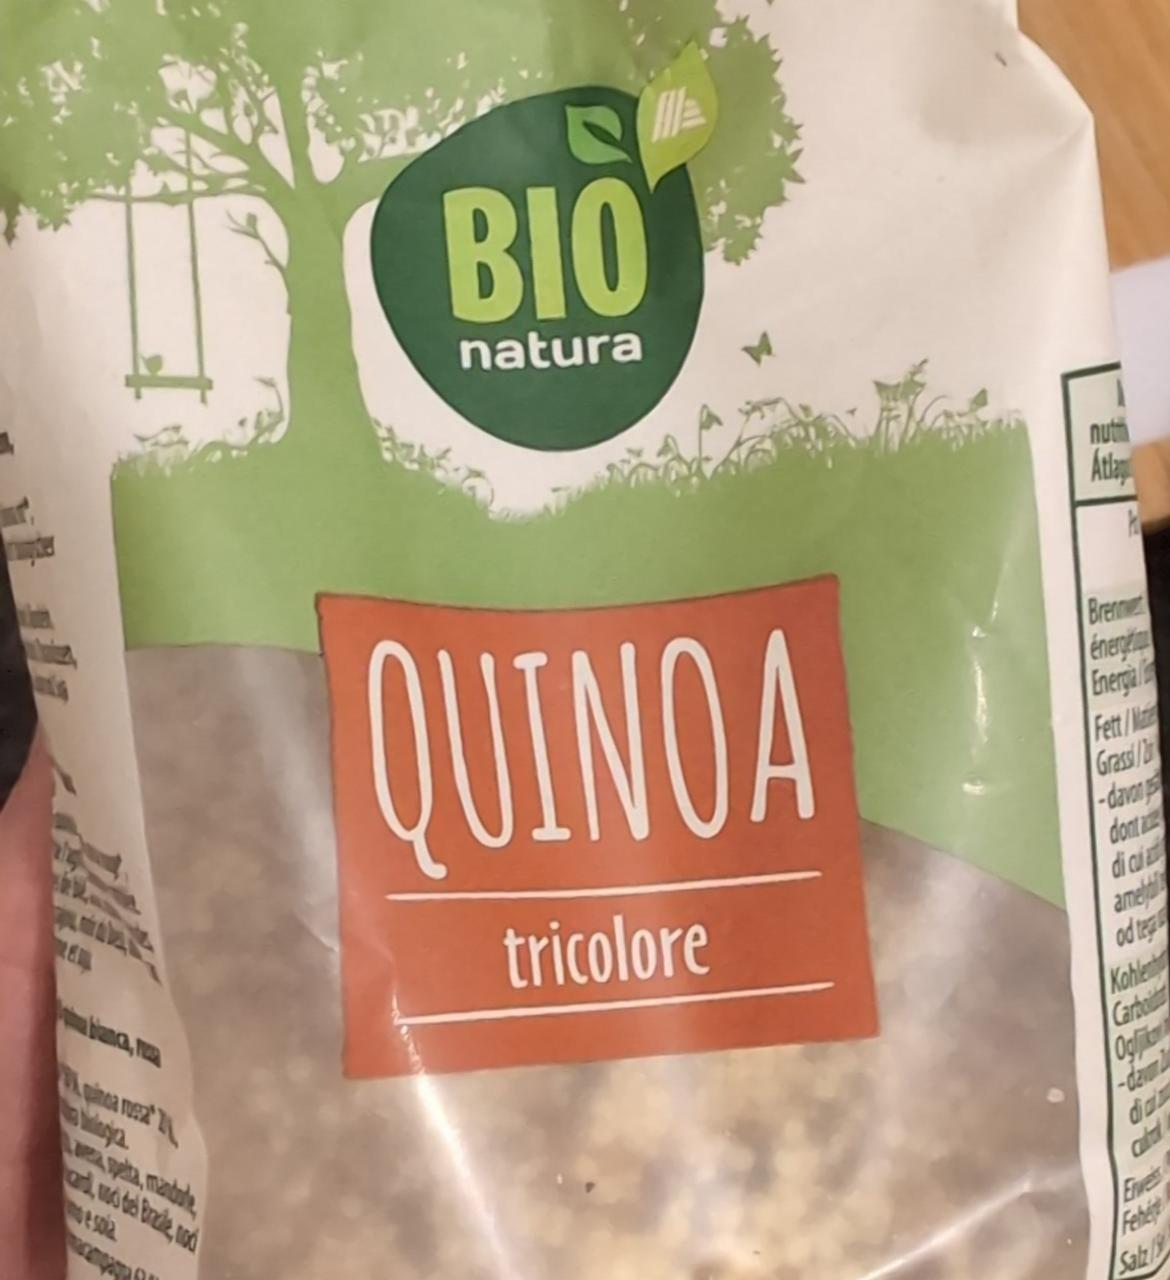 Fotografie - Quinoa tricolore Bio natura